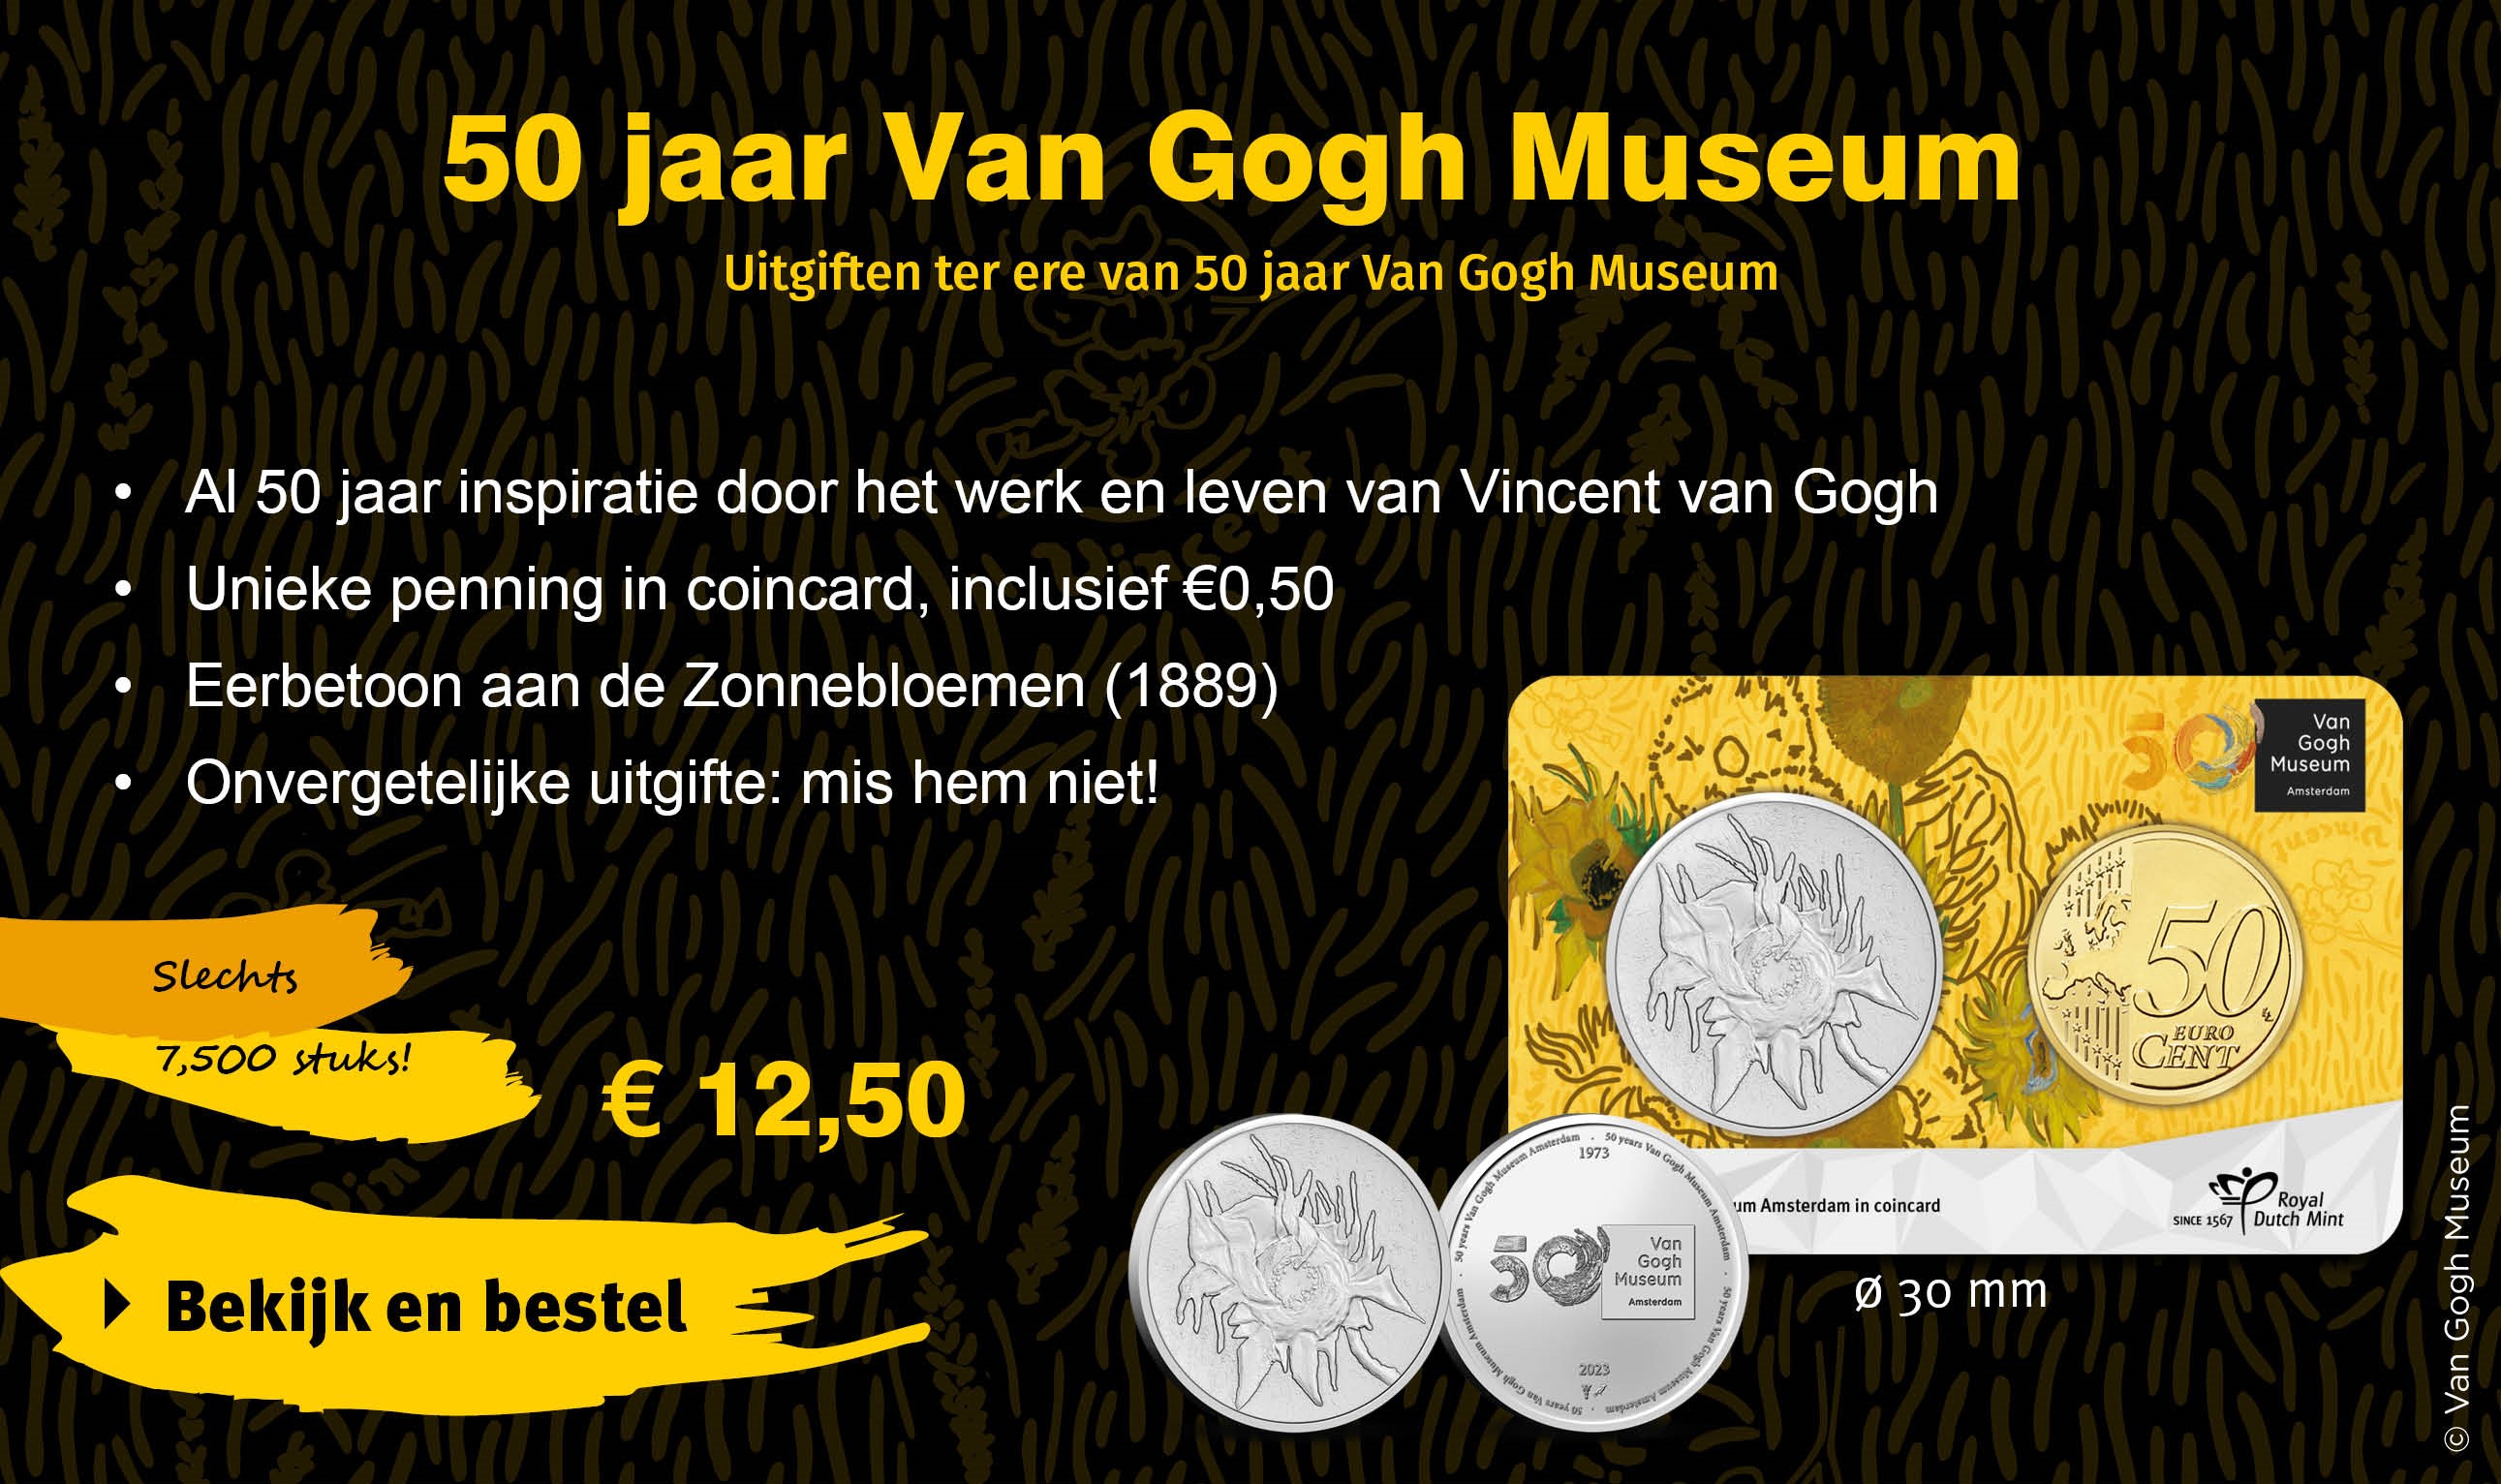 Bekijk en bestel: 50 jaar Van Gogh Museum